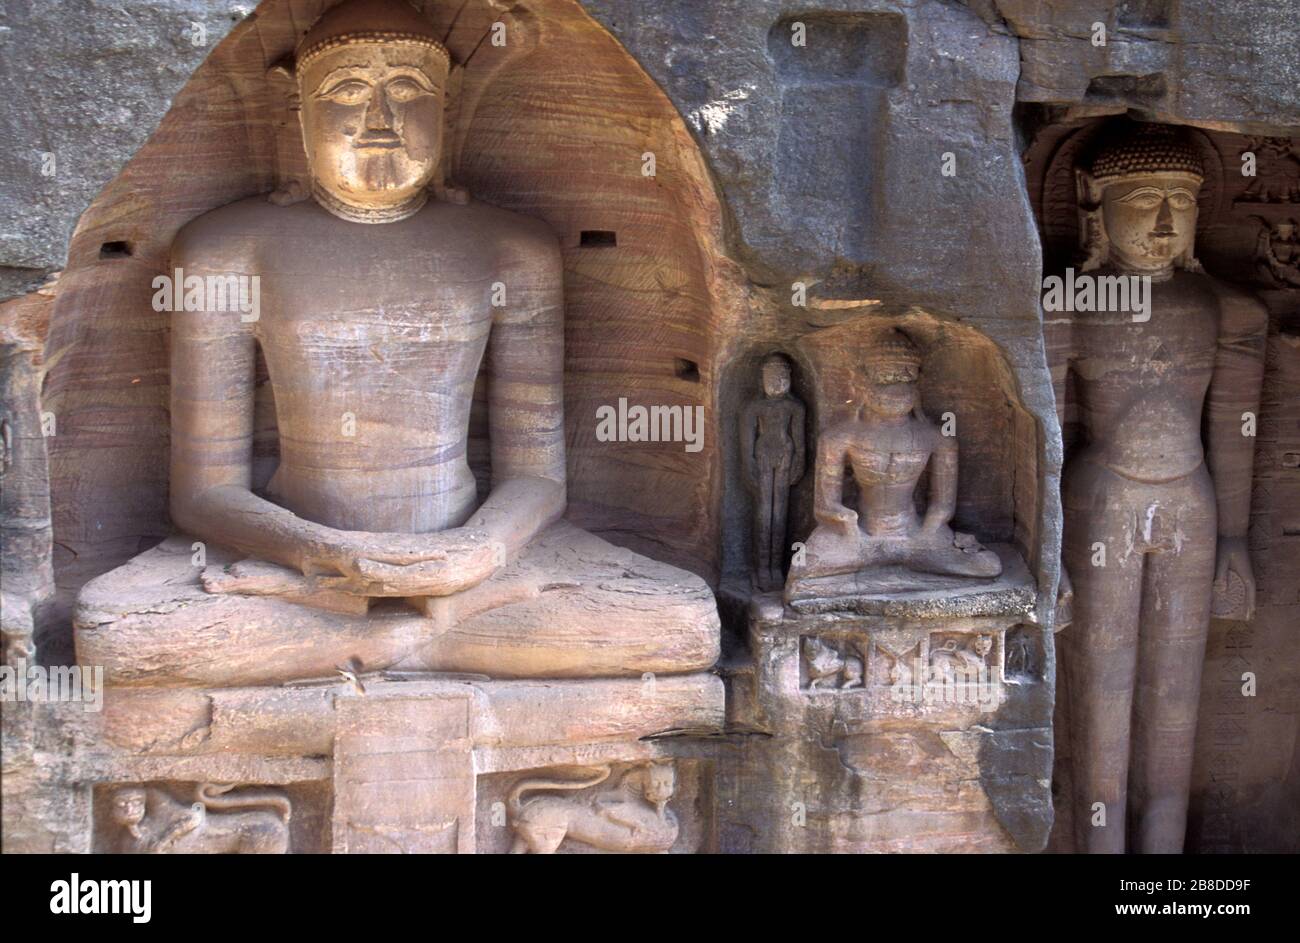 Jain statues at Gwalior build by dungar singh. Madhya Pradesh. India Stock Photo